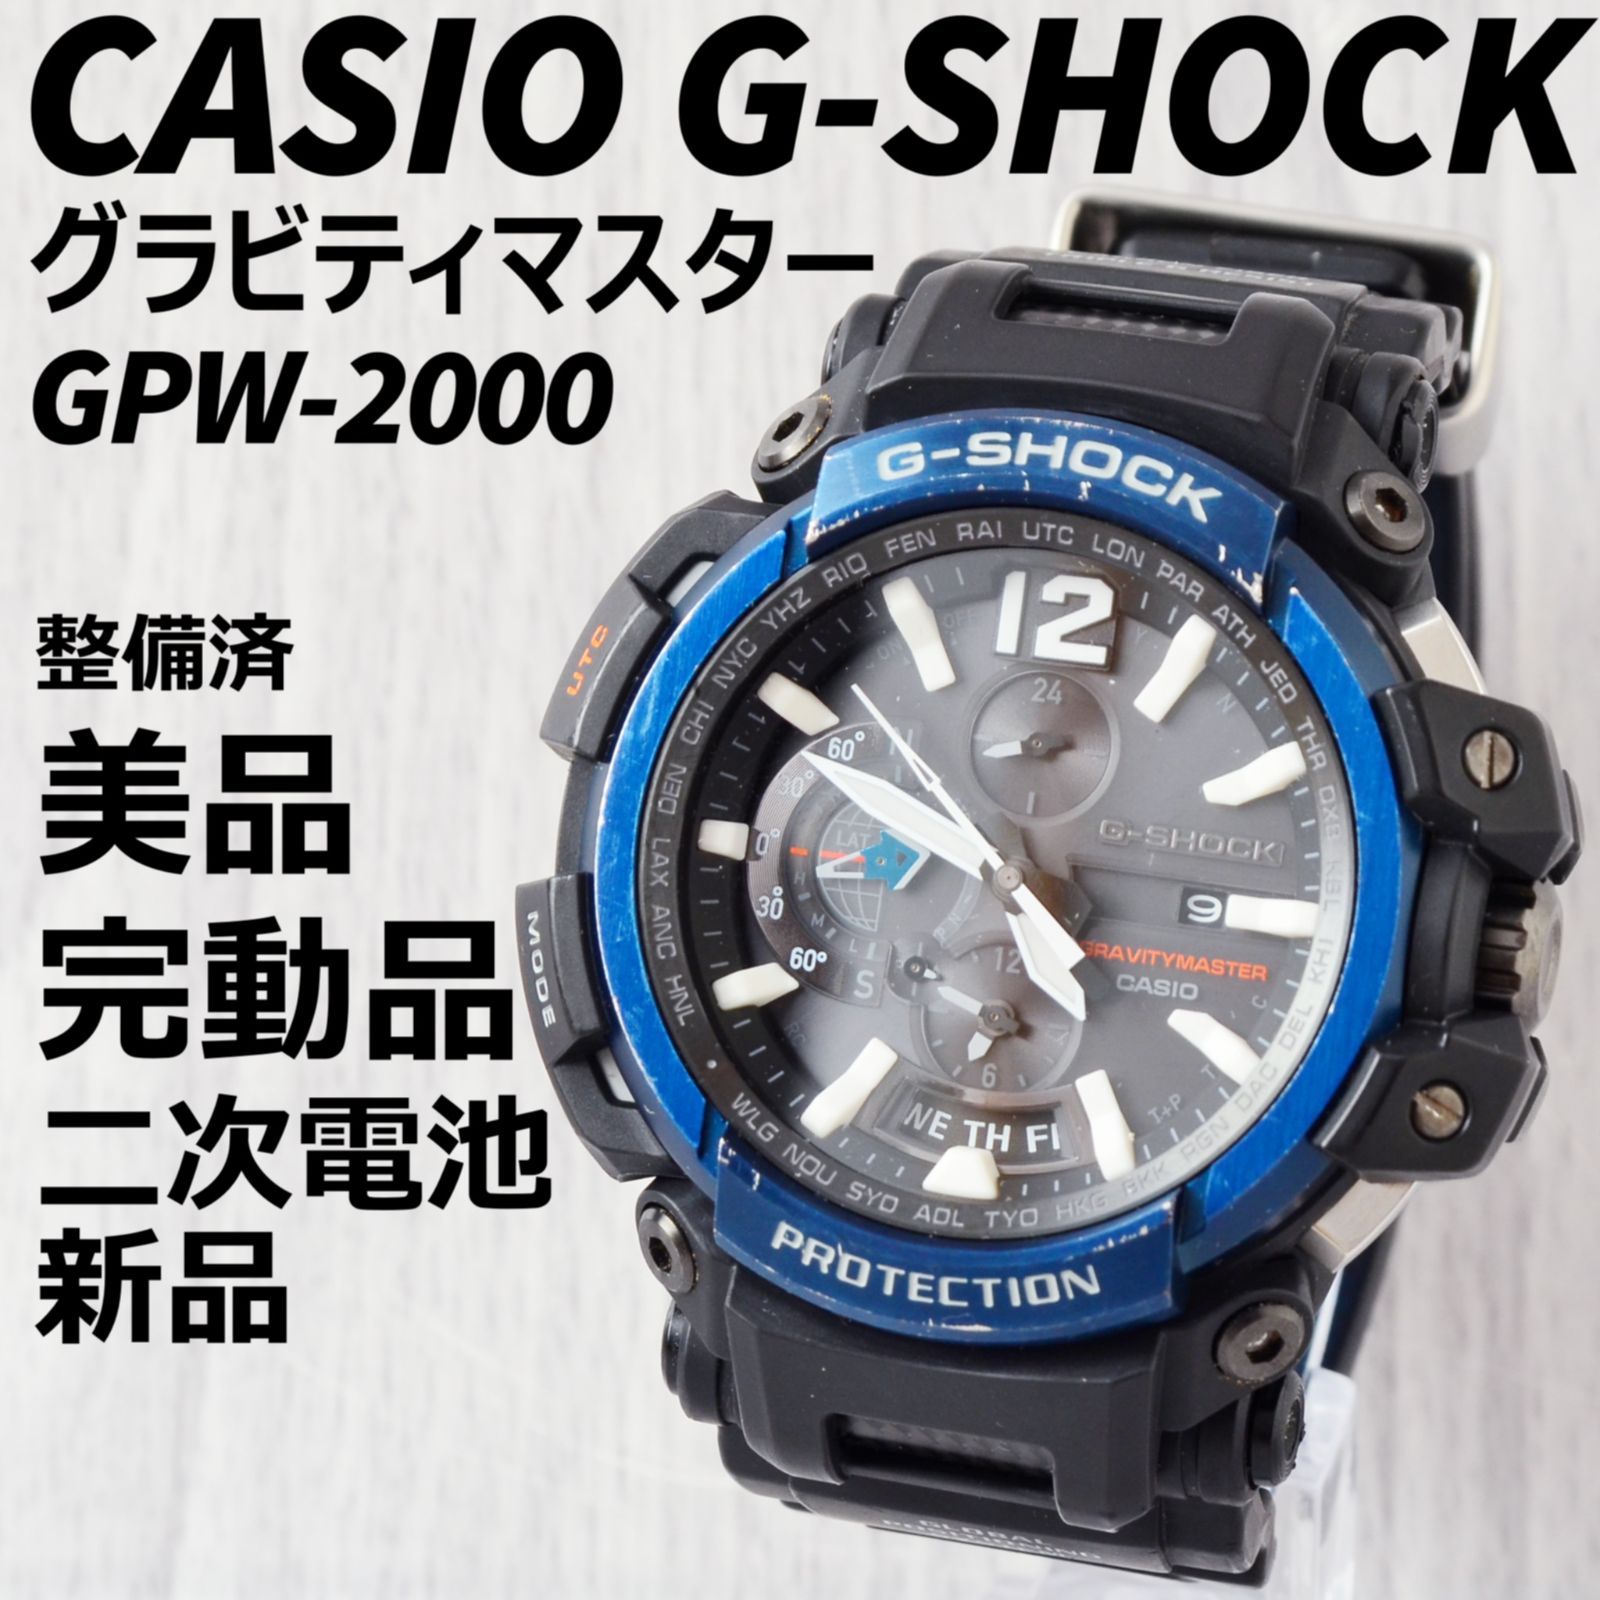 G-SHOCK GPW-2000-3AJF グラビティマスター マスターオブG